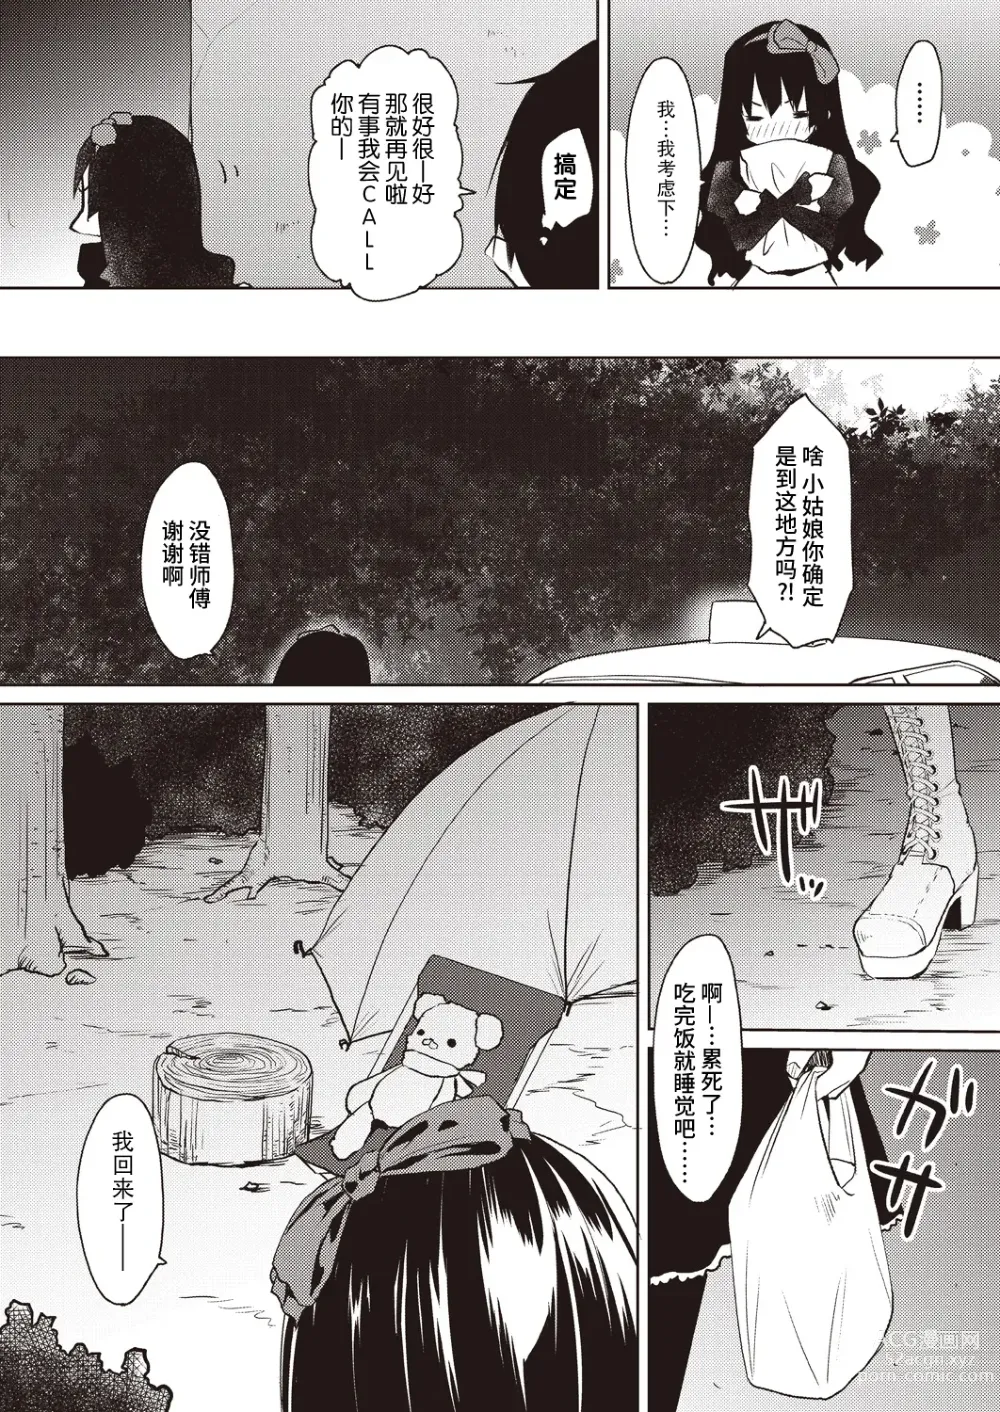 Page 8 of manga Kareobana Kitan Ch.1